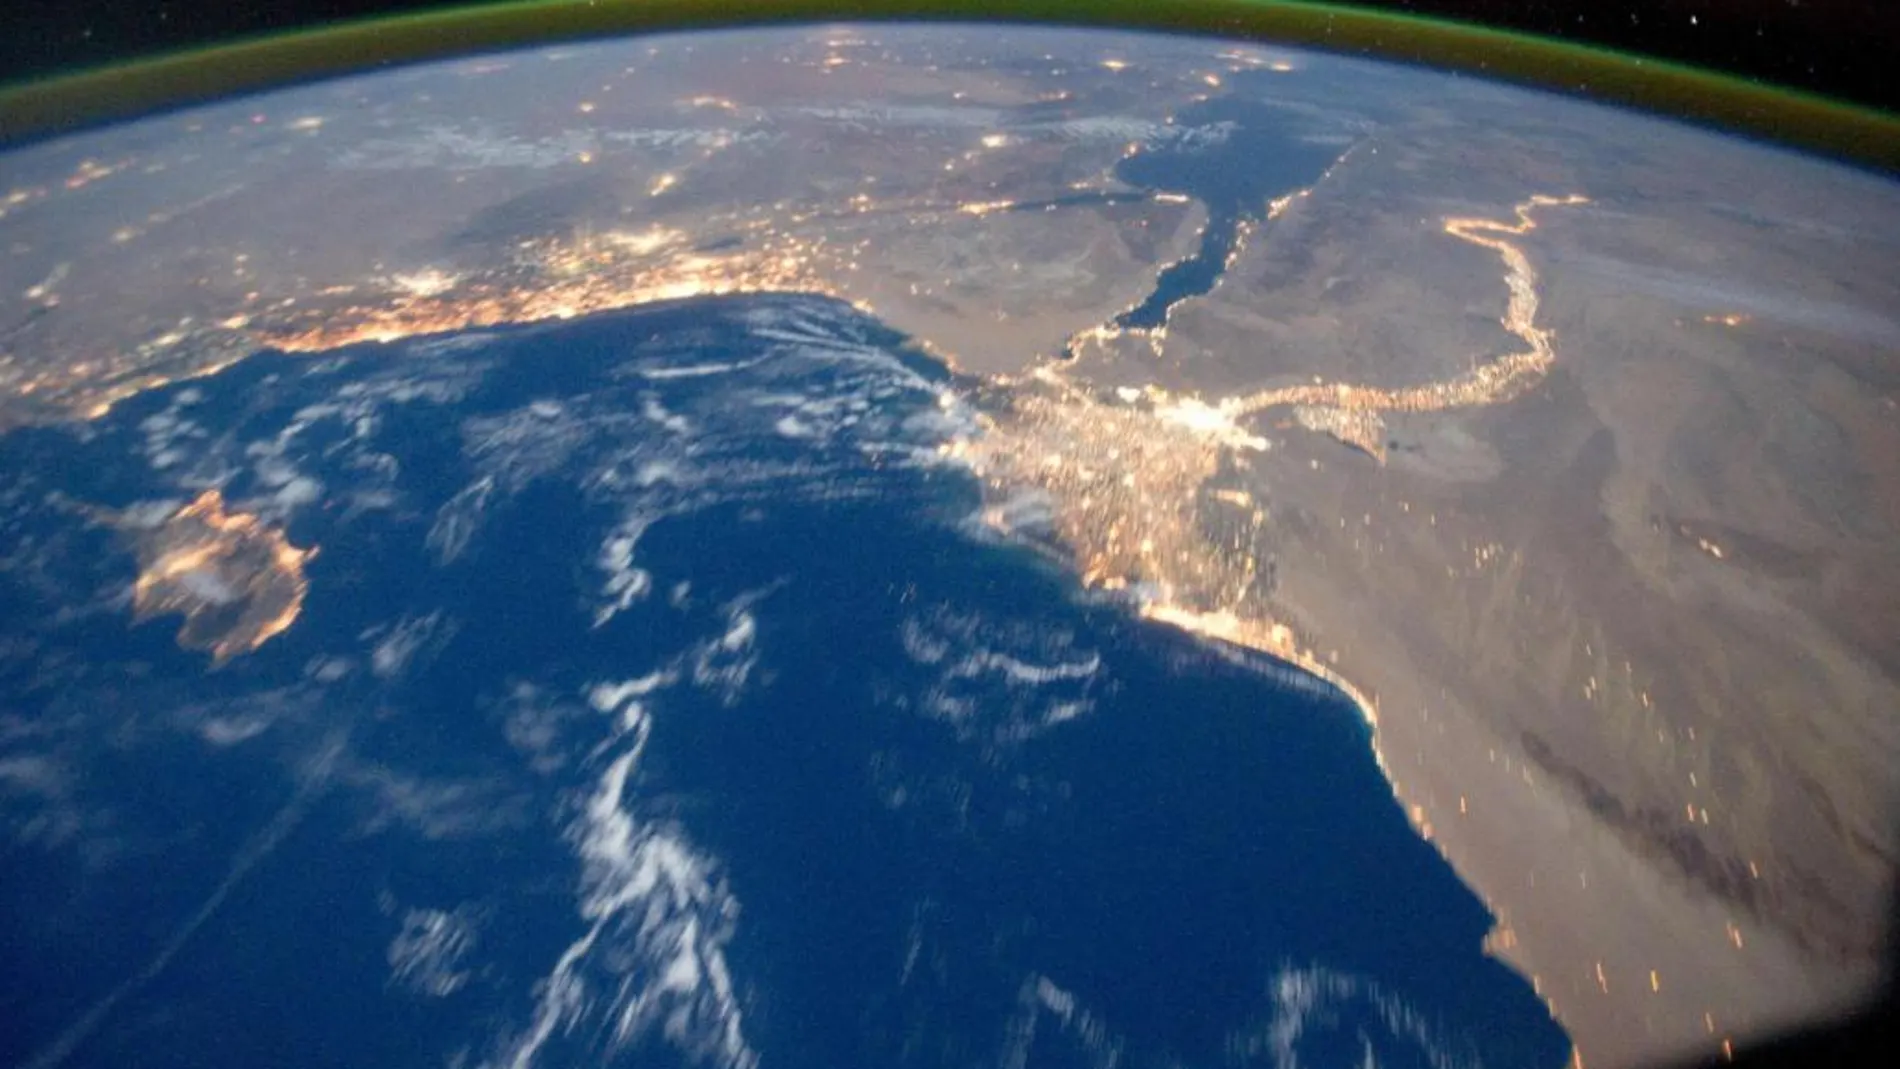 El delta del Nilo, fotografiado desde el espacio por la NASA